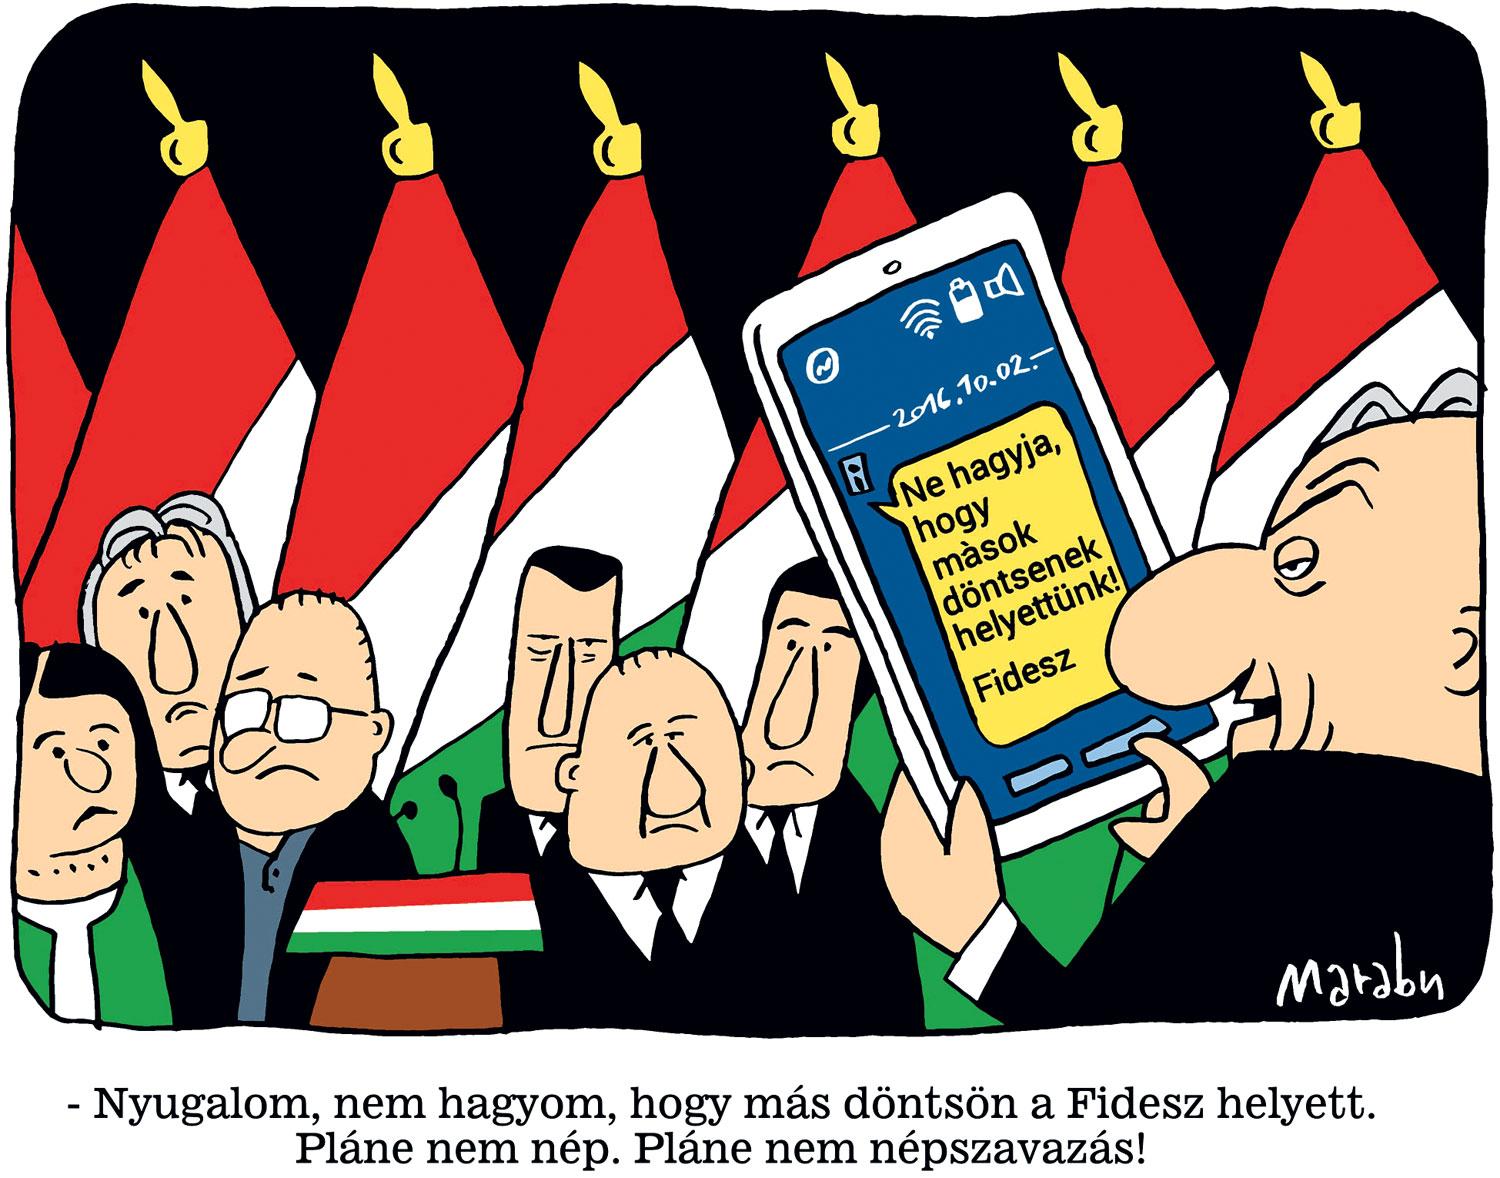 – Nyugalom, nem hagyom, hogy más döntsön a Fidesz helyett. Pláne nem a nép. Pláne nem népszavazás!